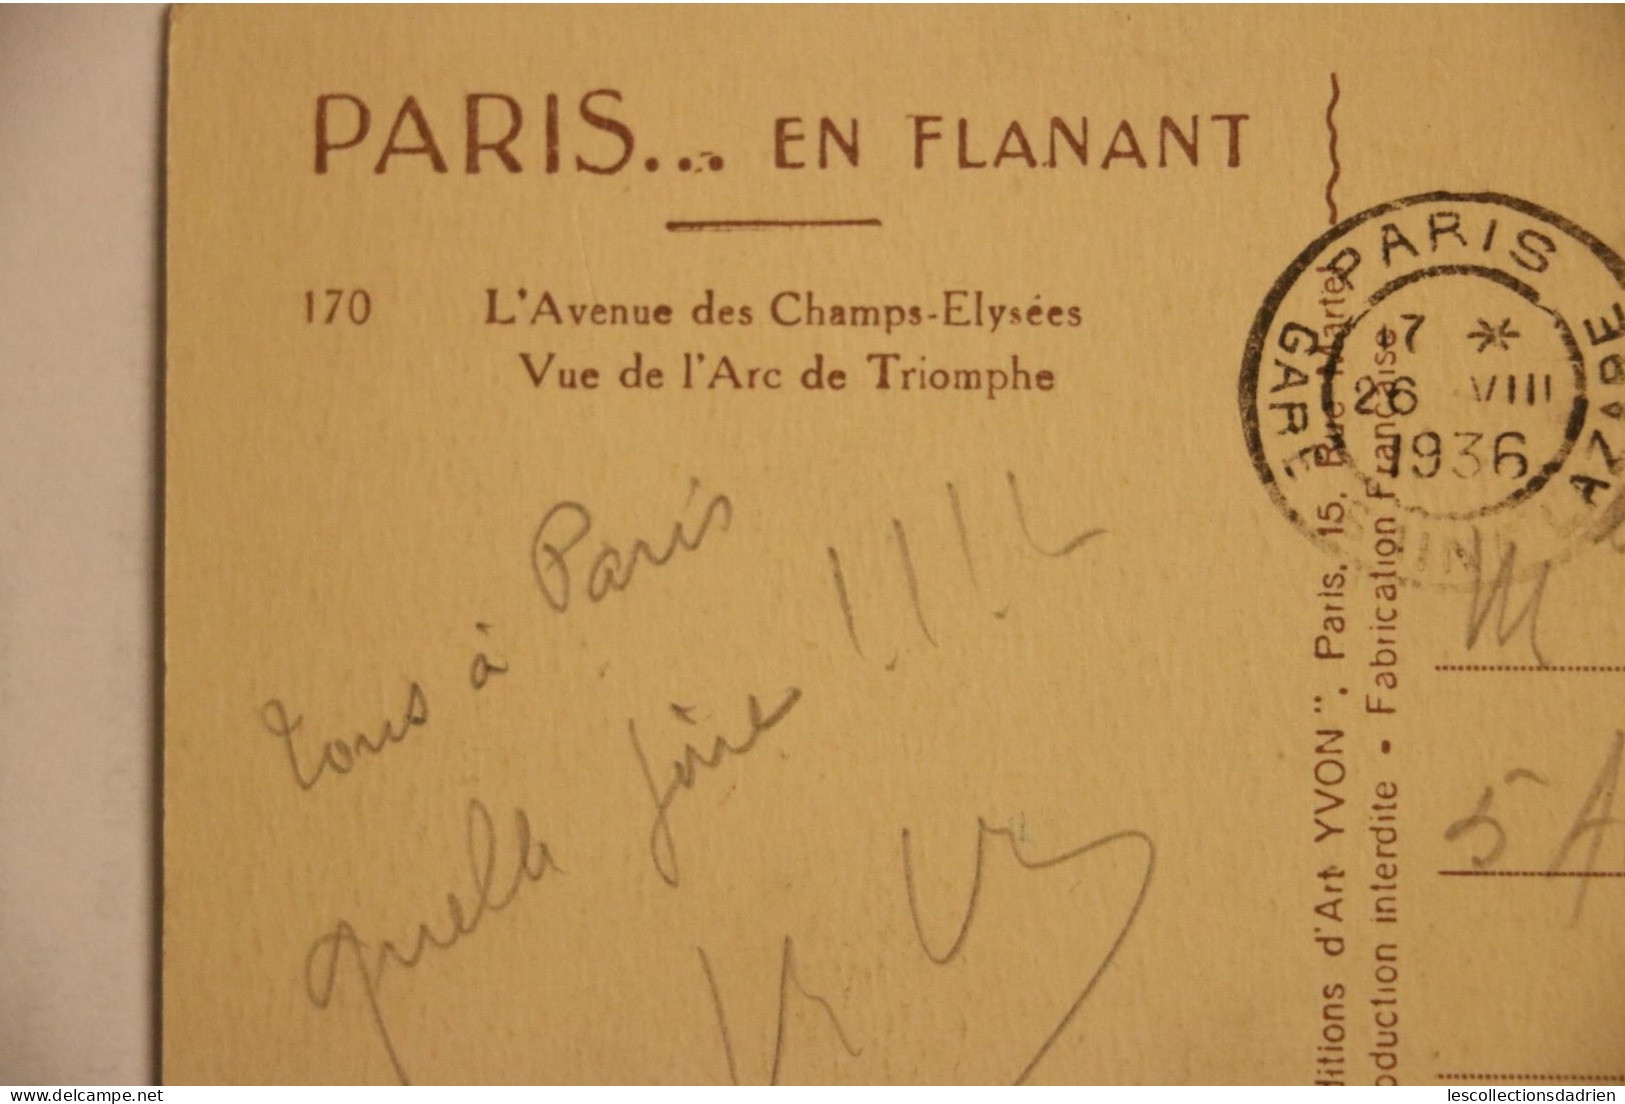 Carte postale ancienne - Paris -  Paris en flanant - champs Elysées arc du Triomphe  1936- gare St Lazare oblitération